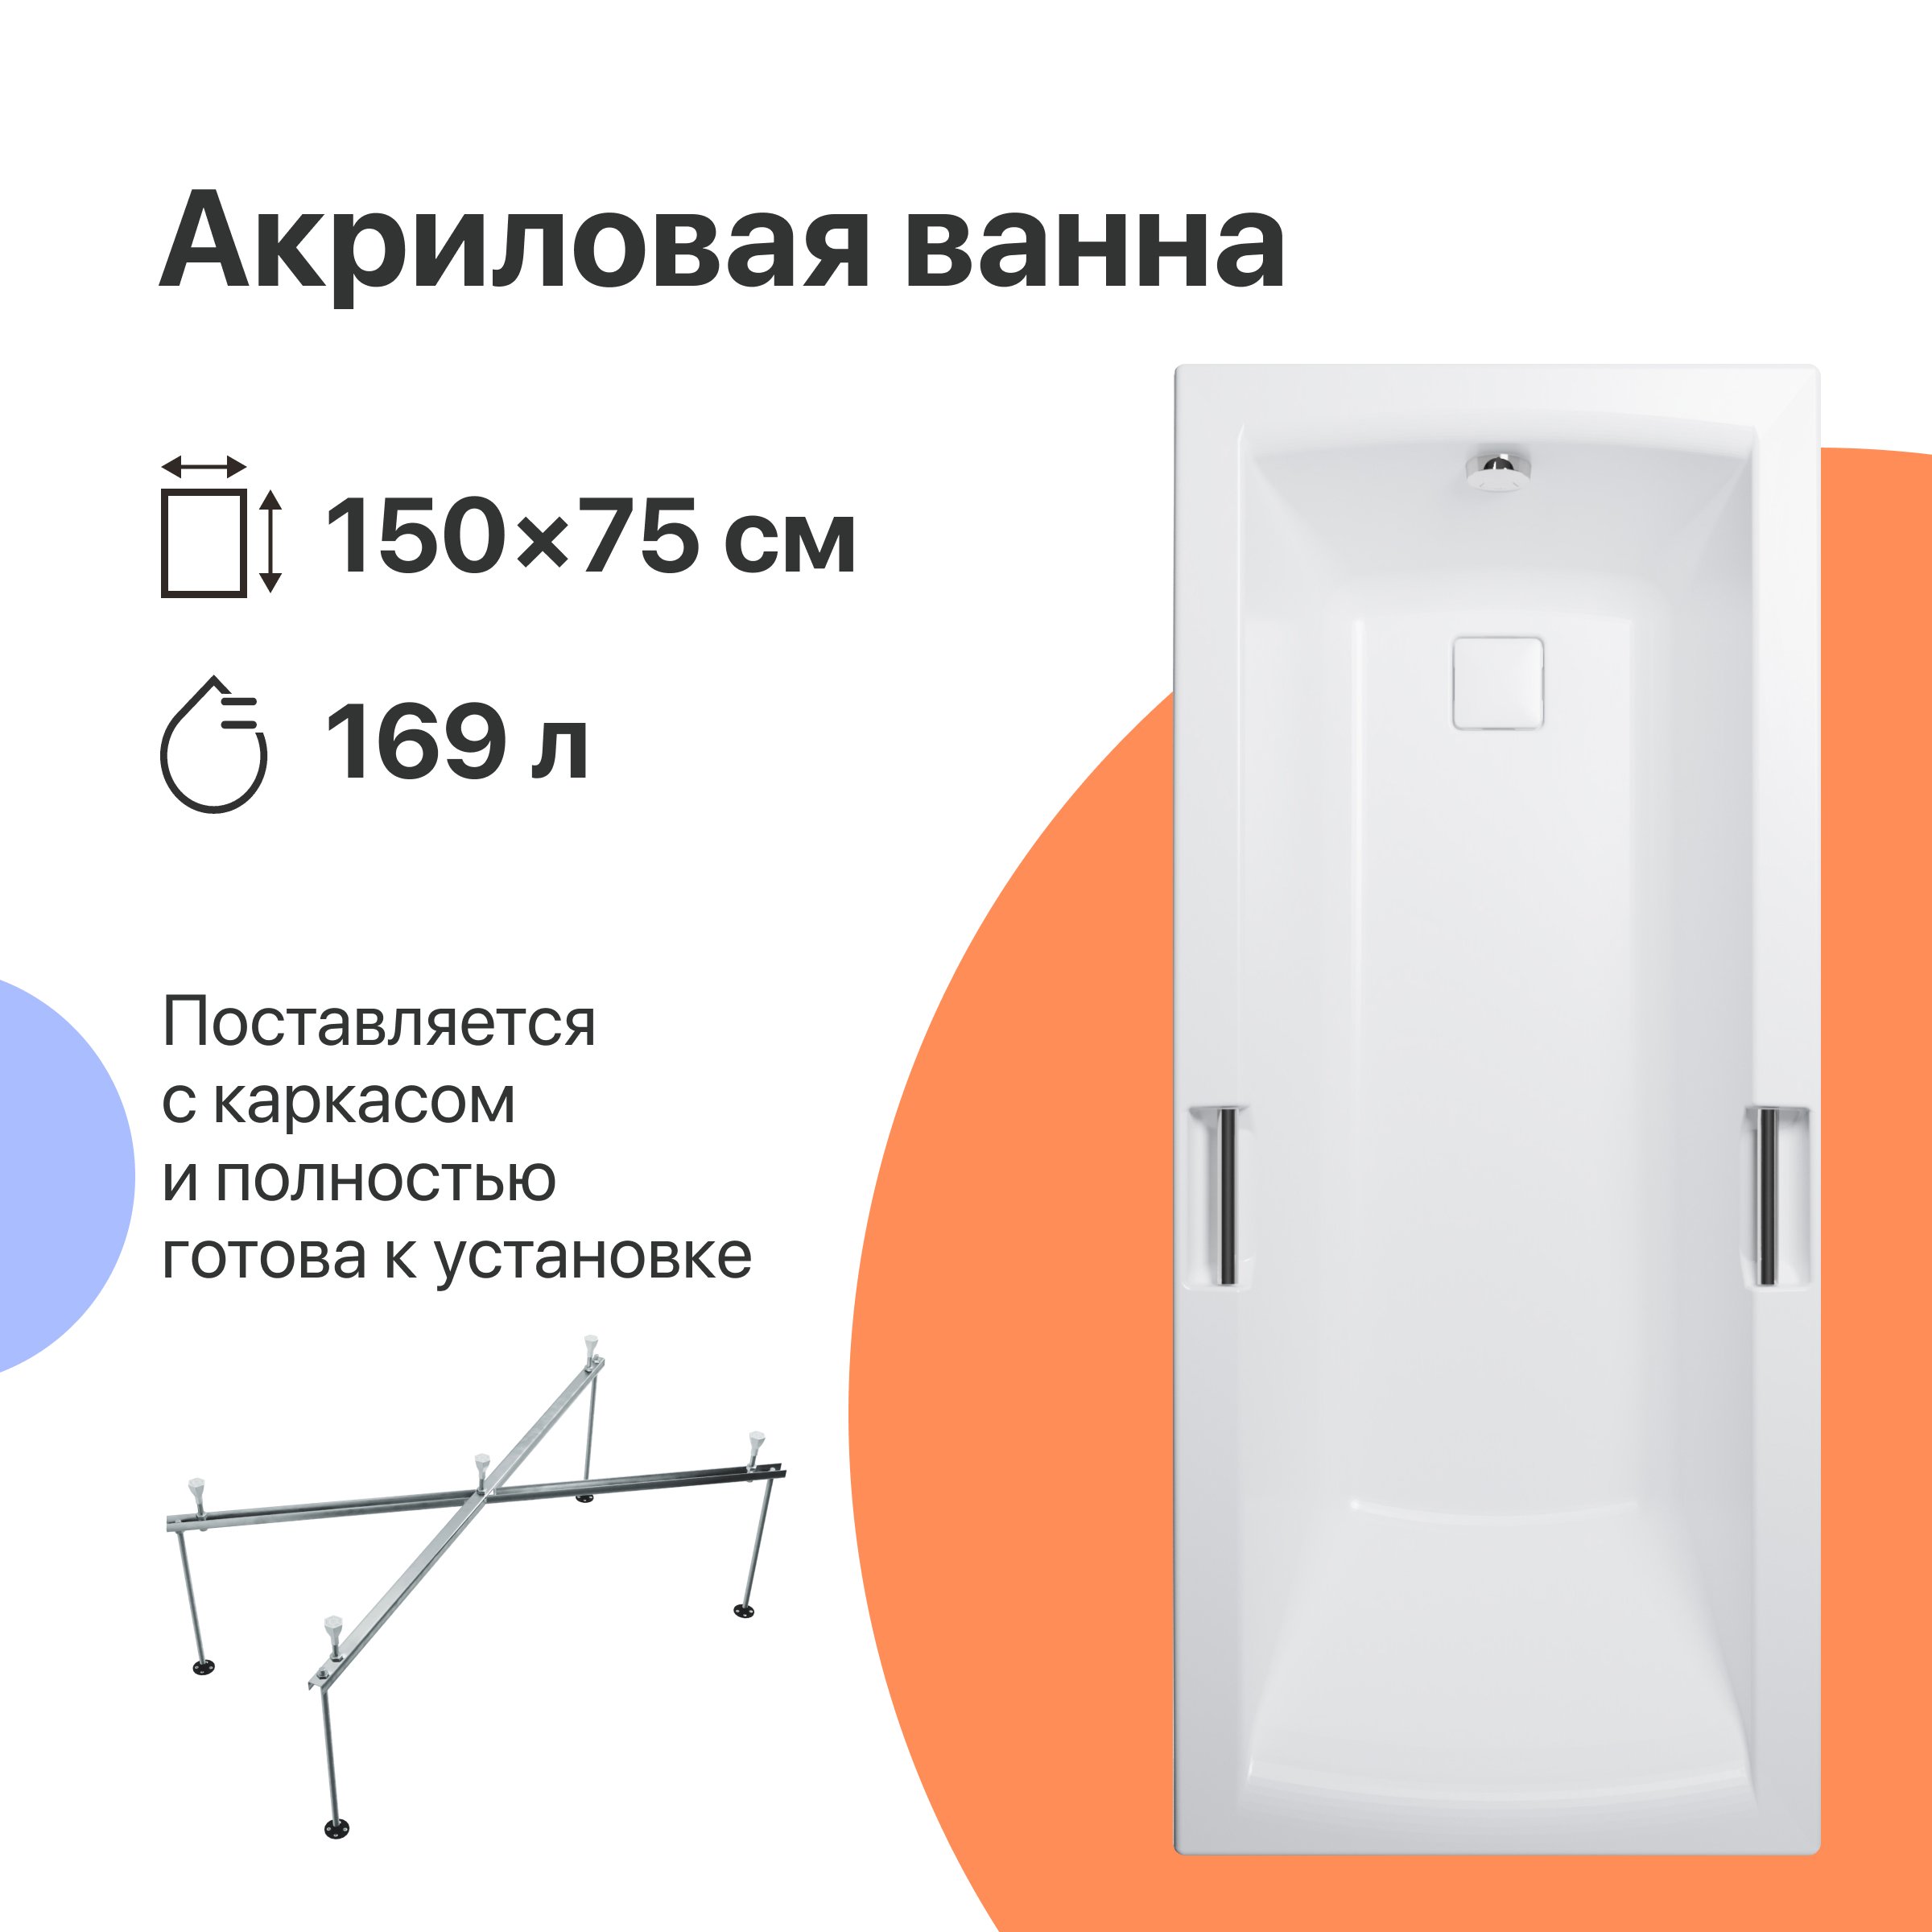 Акриловая ванна DIWO Дмитров 150x75 с каркасом